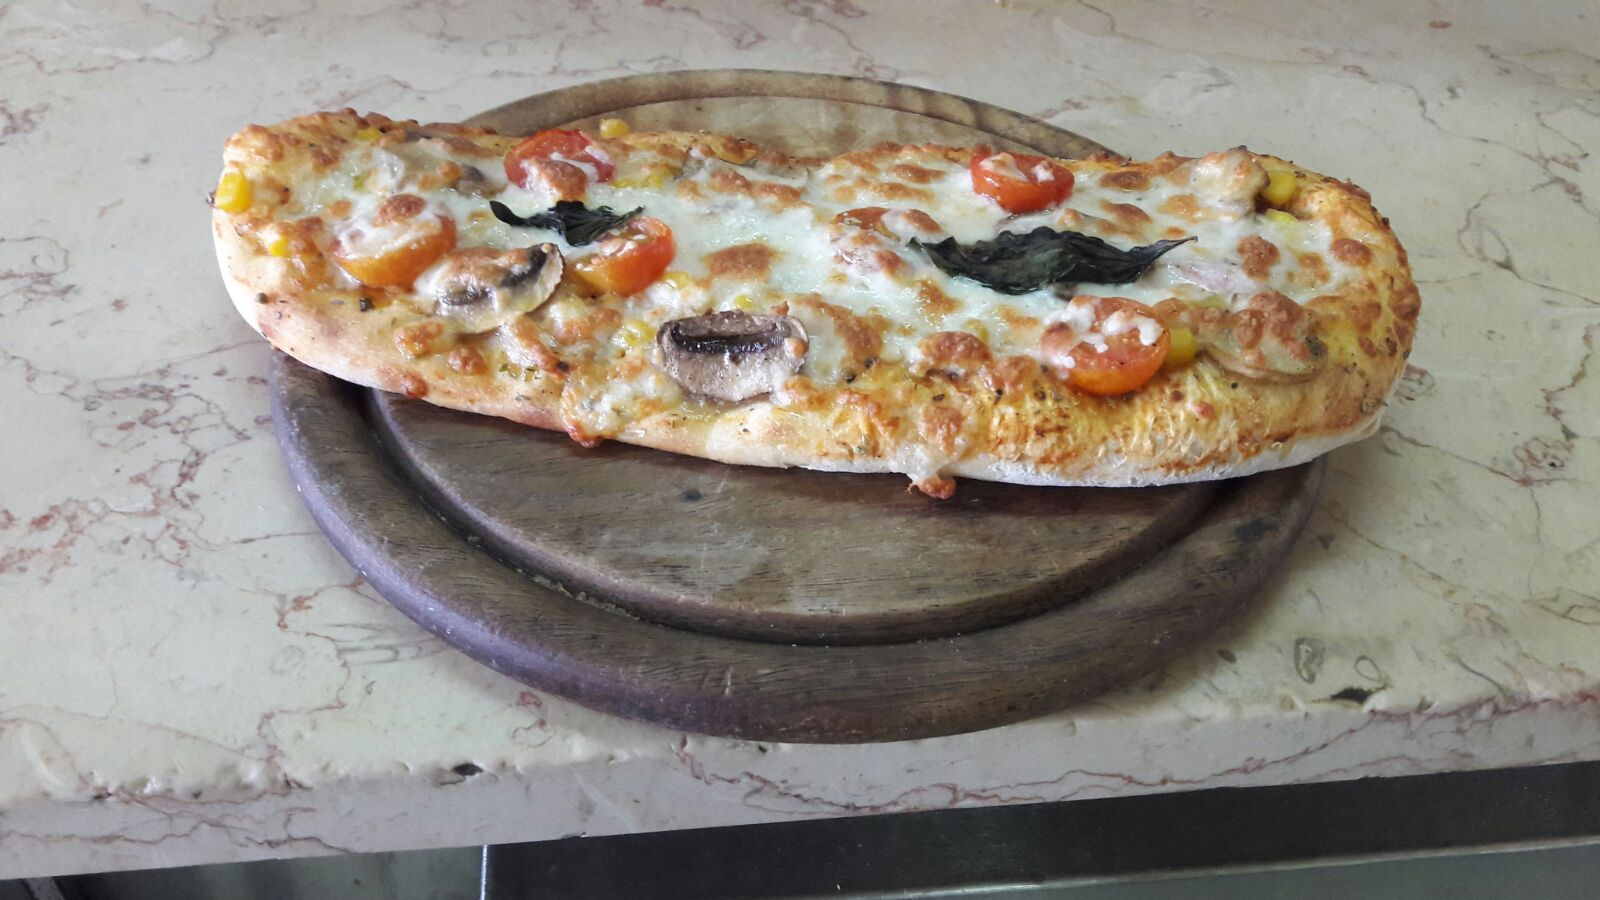  يافا: حملة تخفيضات جديدة في بيتزا اوليف مع أشهى انوع البيتزا والمعجنات